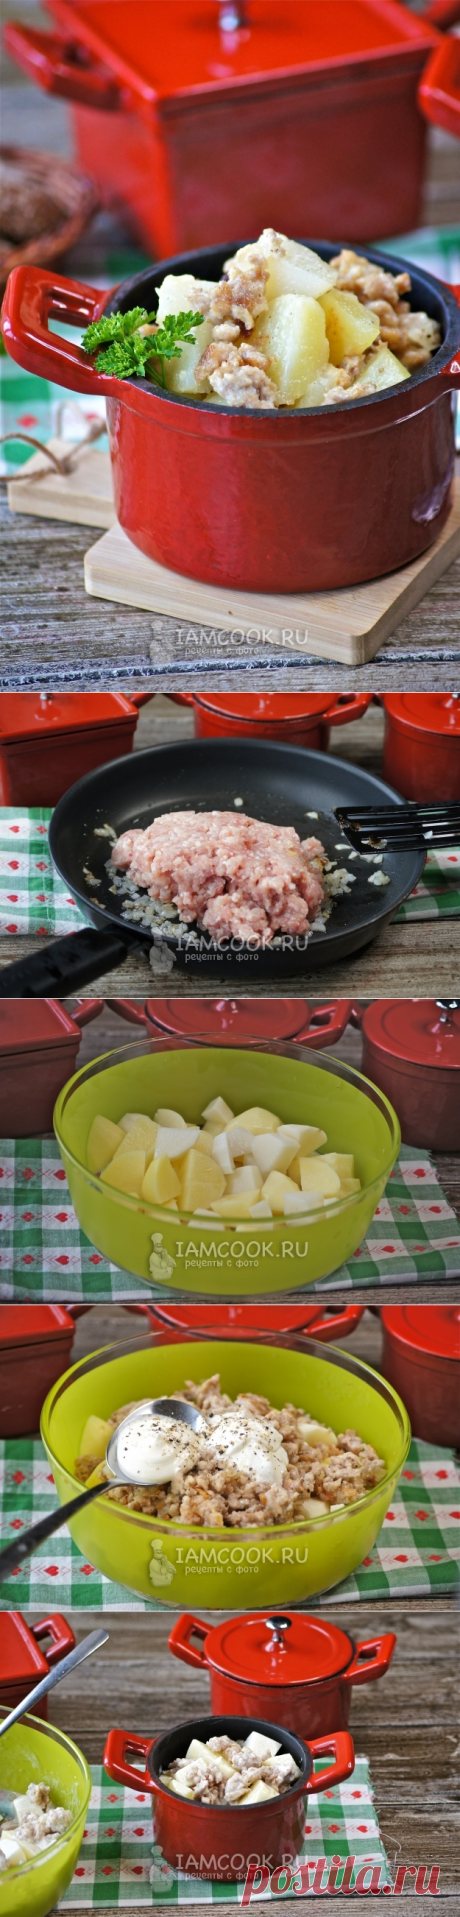 Картошка с фаршем в горшочках — рецепт с фото и видео. Как приготовить картошку с фаршем в горшочках в духовке?